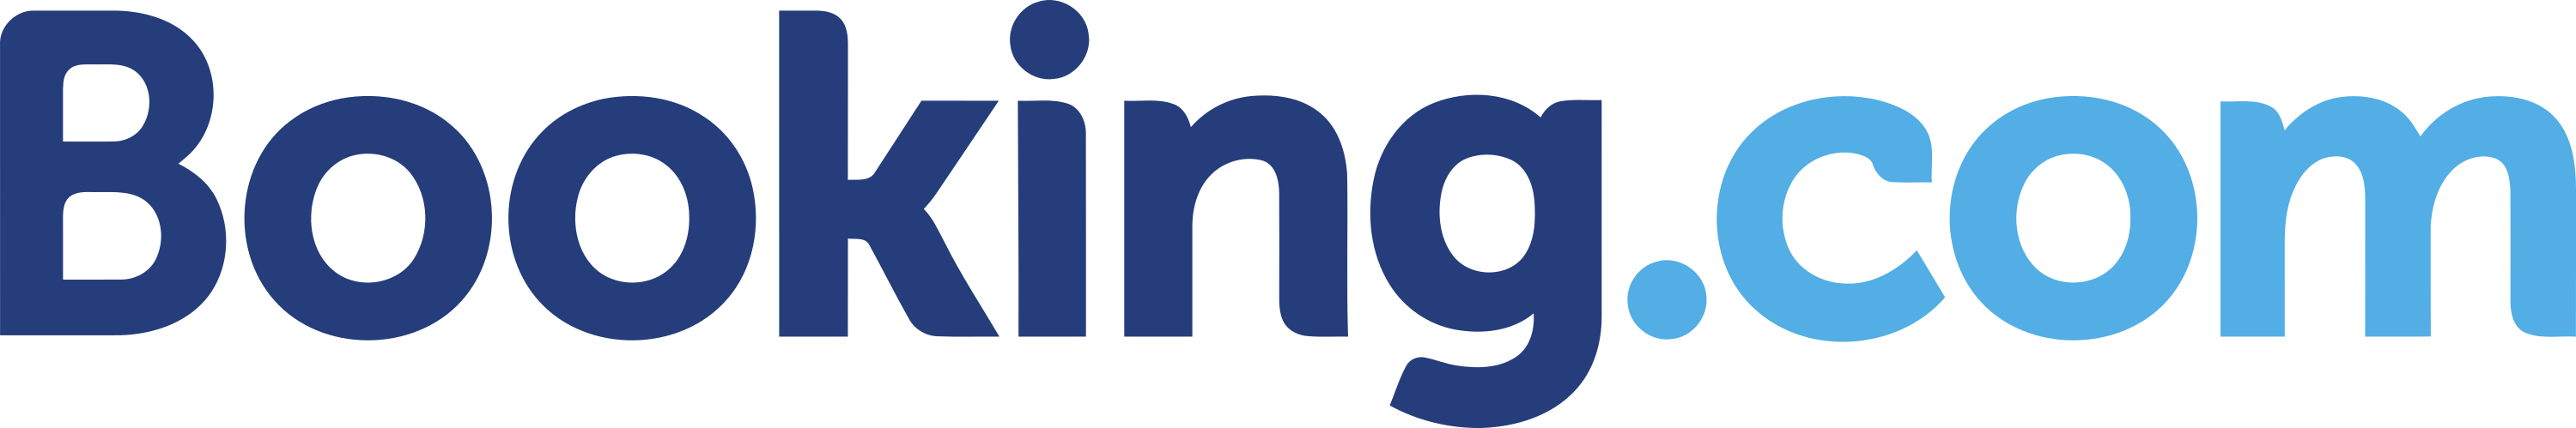 Booking logo 2 - Booking.com Logo